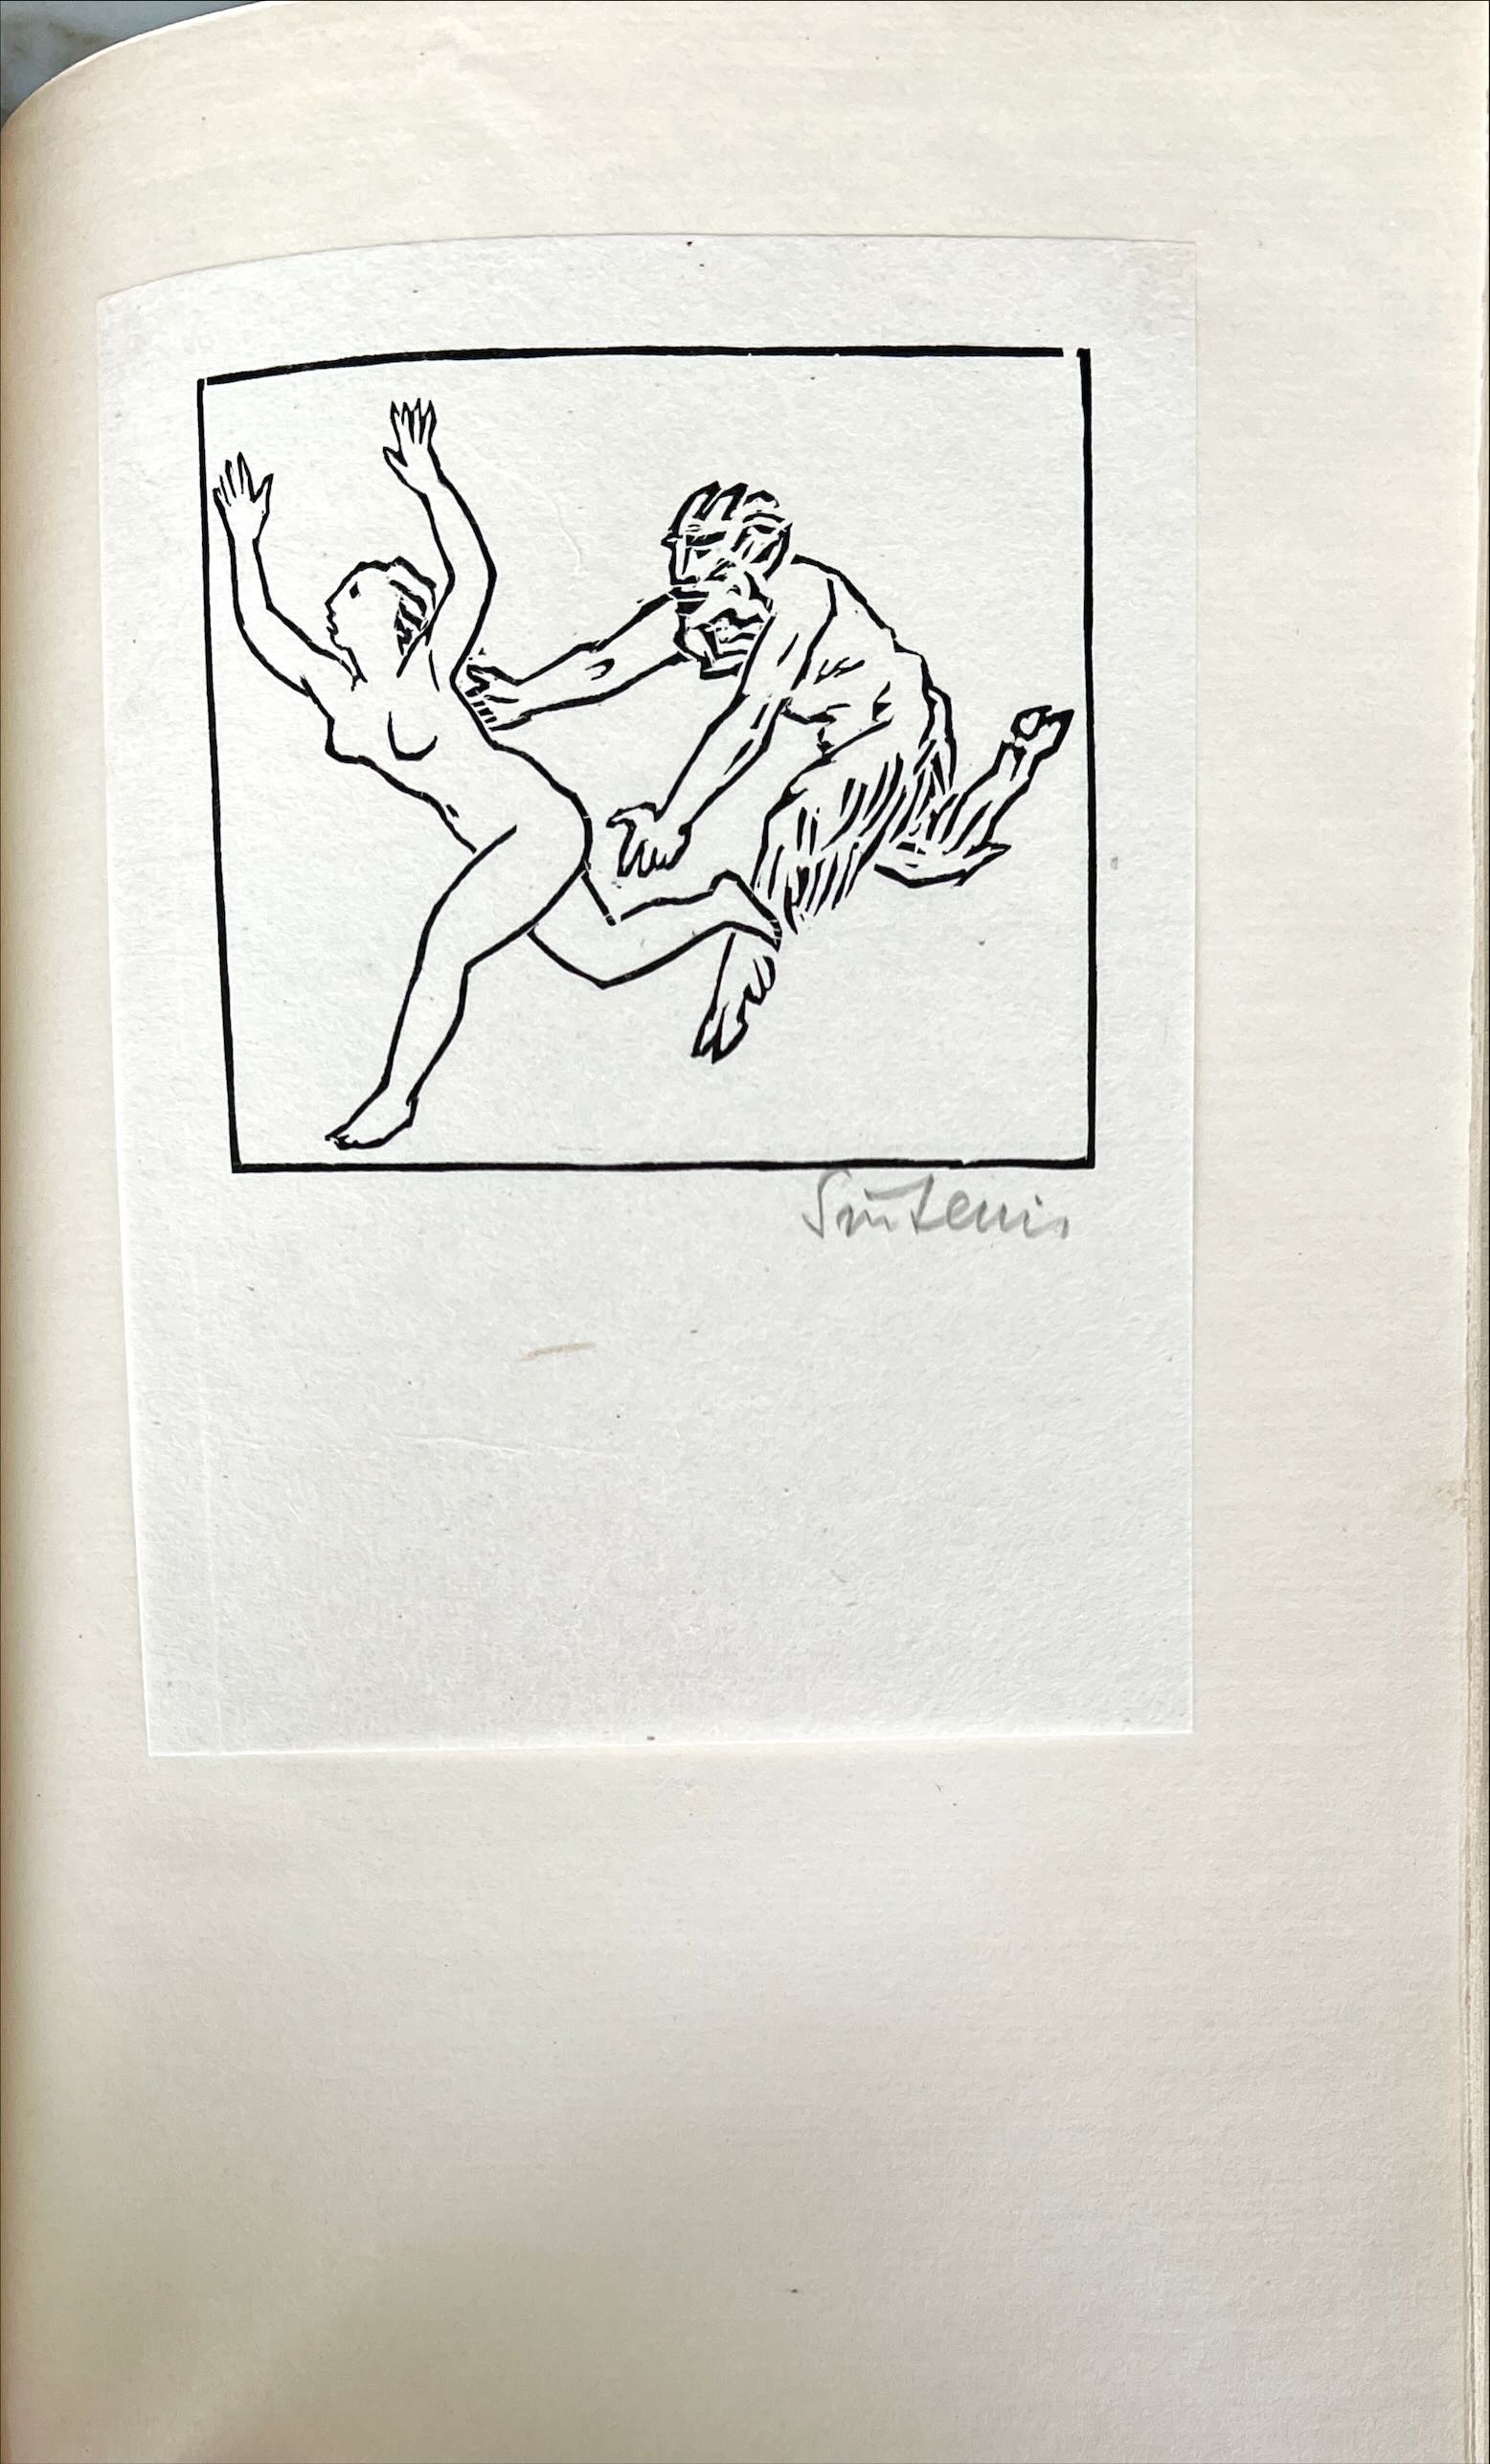 Daphnis und Chloe. Mit 31 signierten Holzstichen von Renée Sintenis. Ex. Nr. 12.